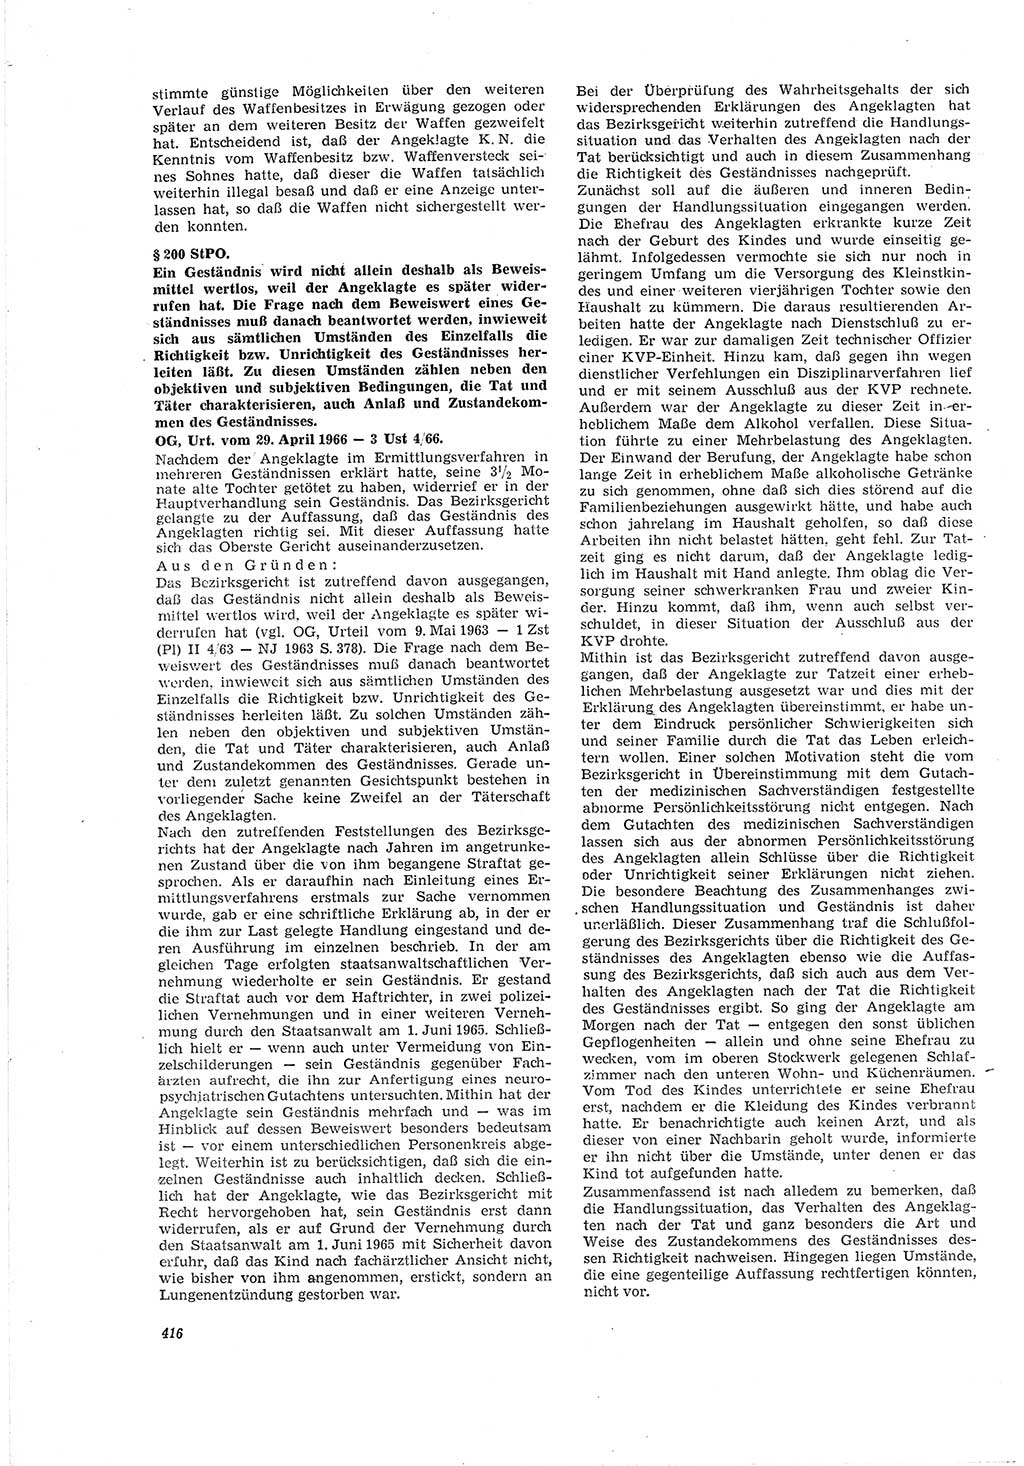 Neue Justiz (NJ), Zeitschrift für Recht und Rechtswissenschaft [Deutsche Demokratische Republik (DDR)], 20. Jahrgang 1966, Seite 416 (NJ DDR 1966, S. 416)